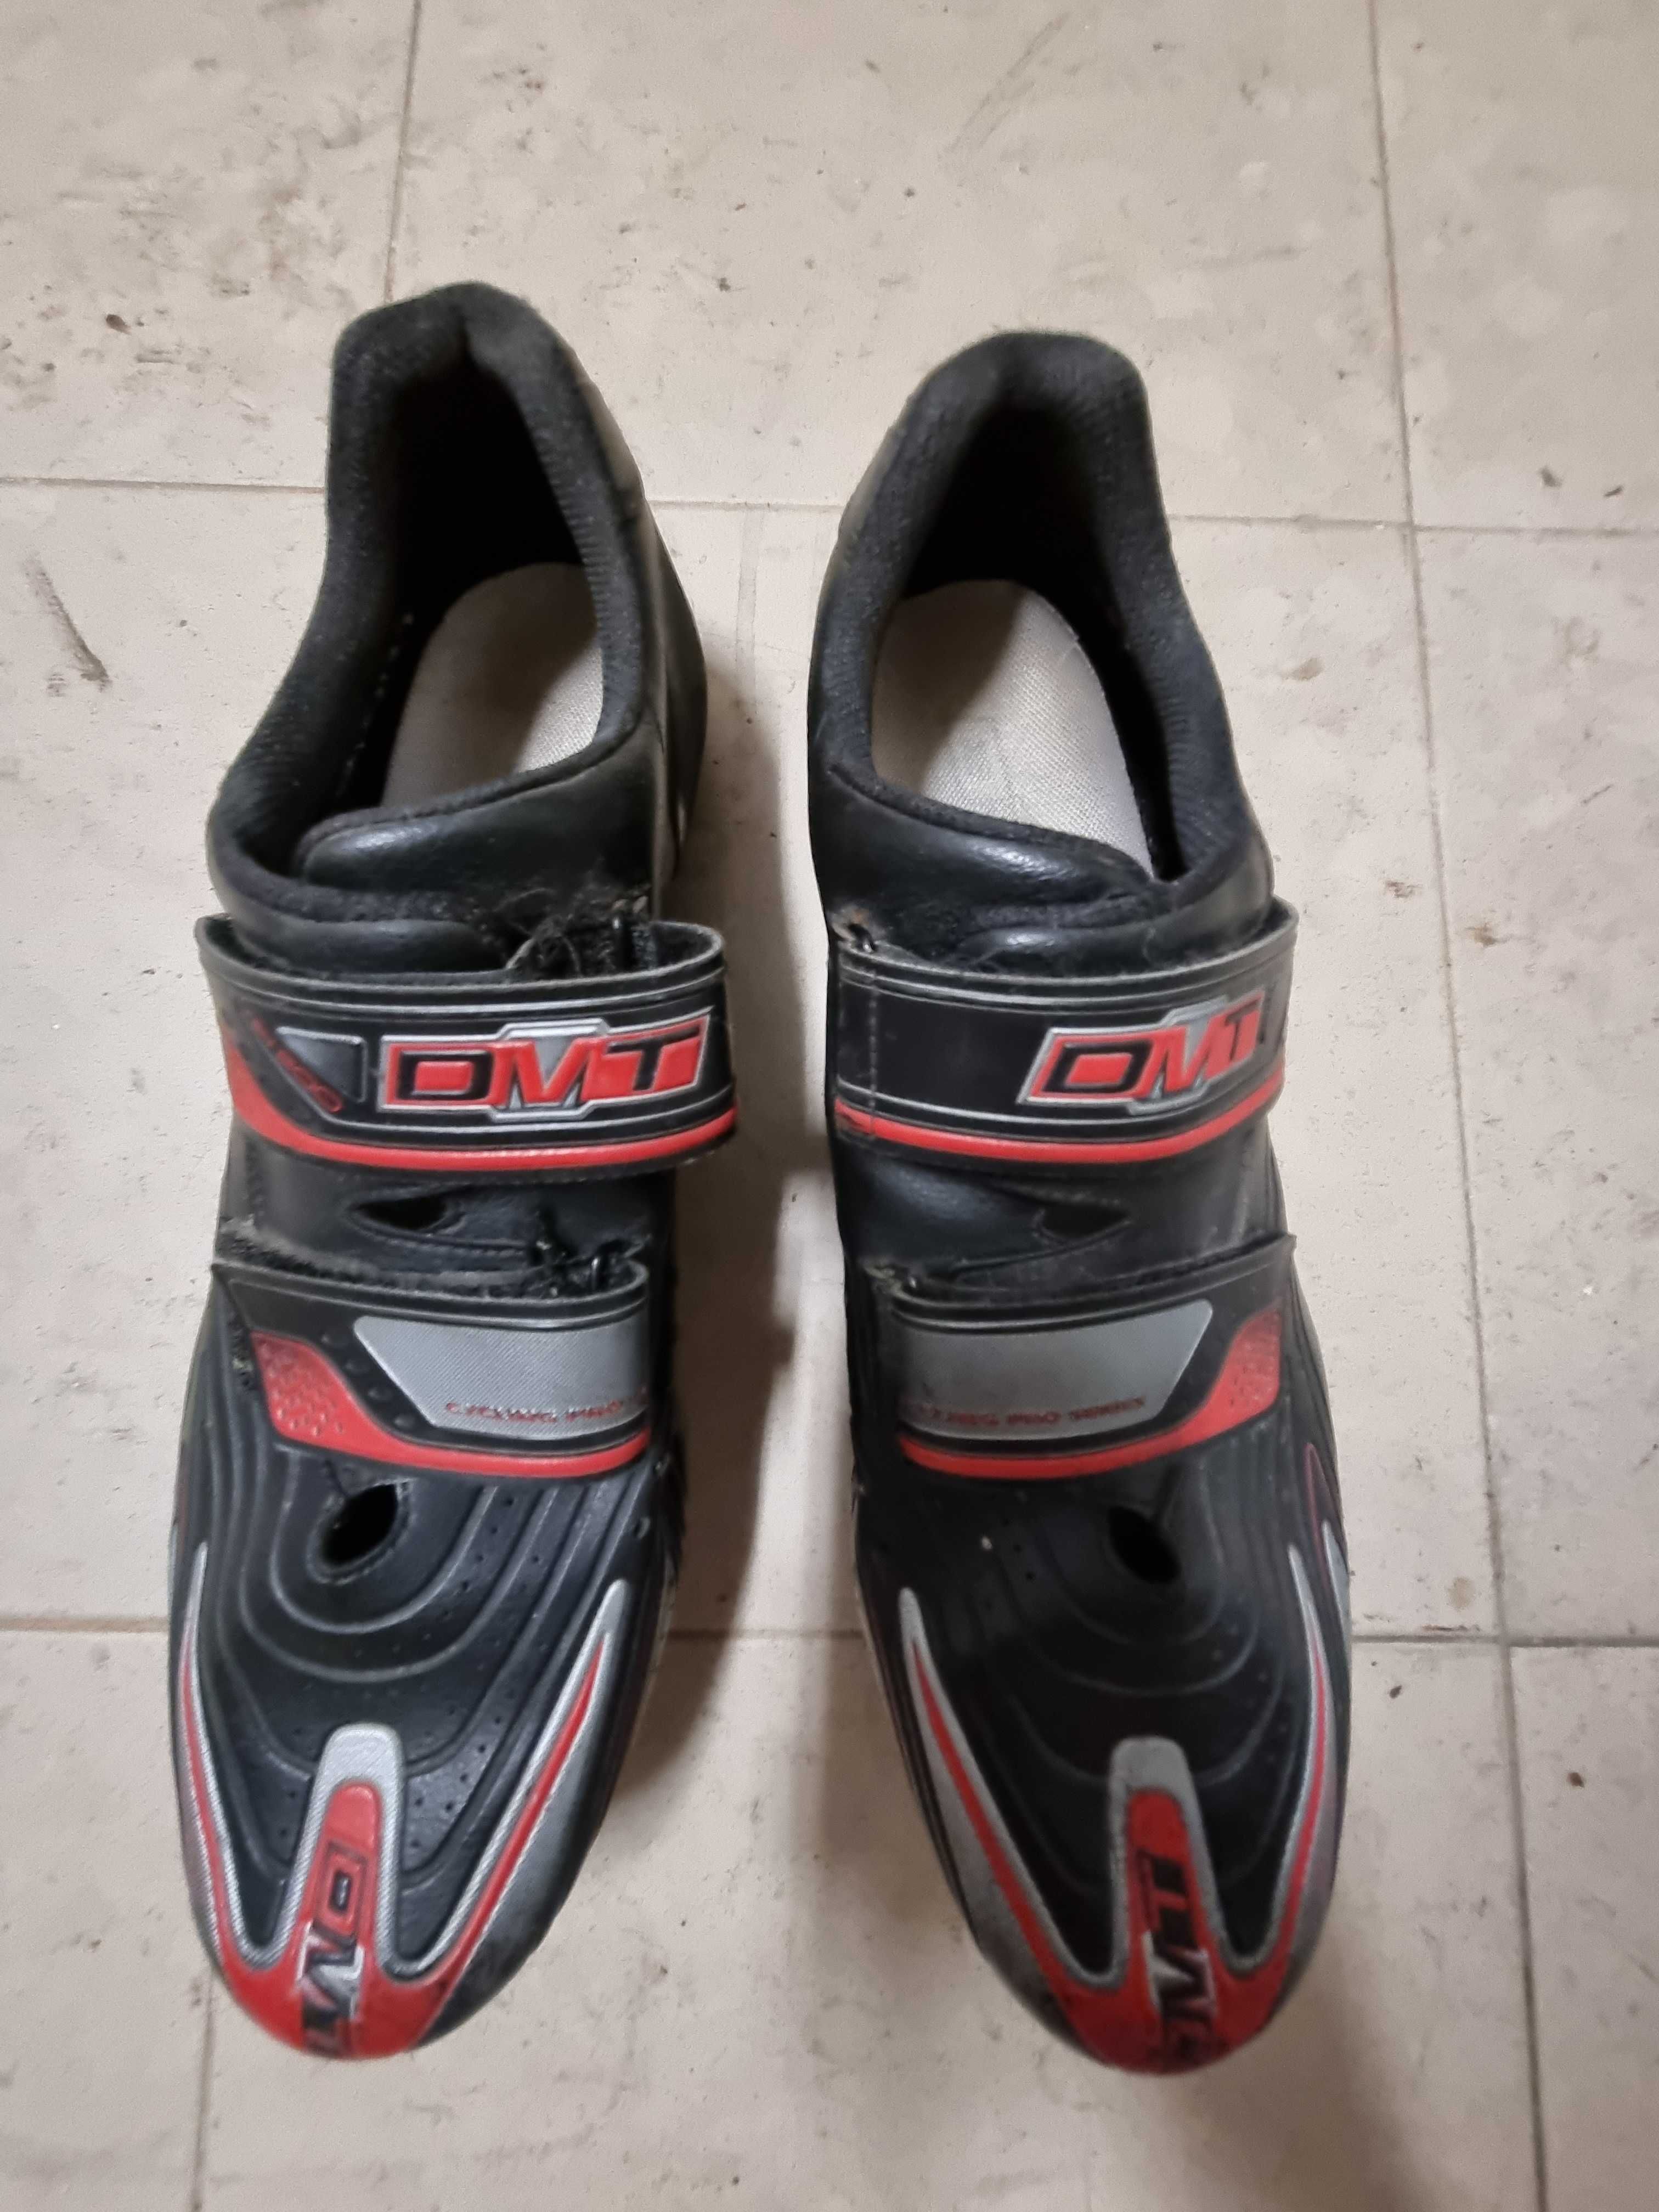 Material ciclismo usado sapatos avanço selim carbono suporte bidon